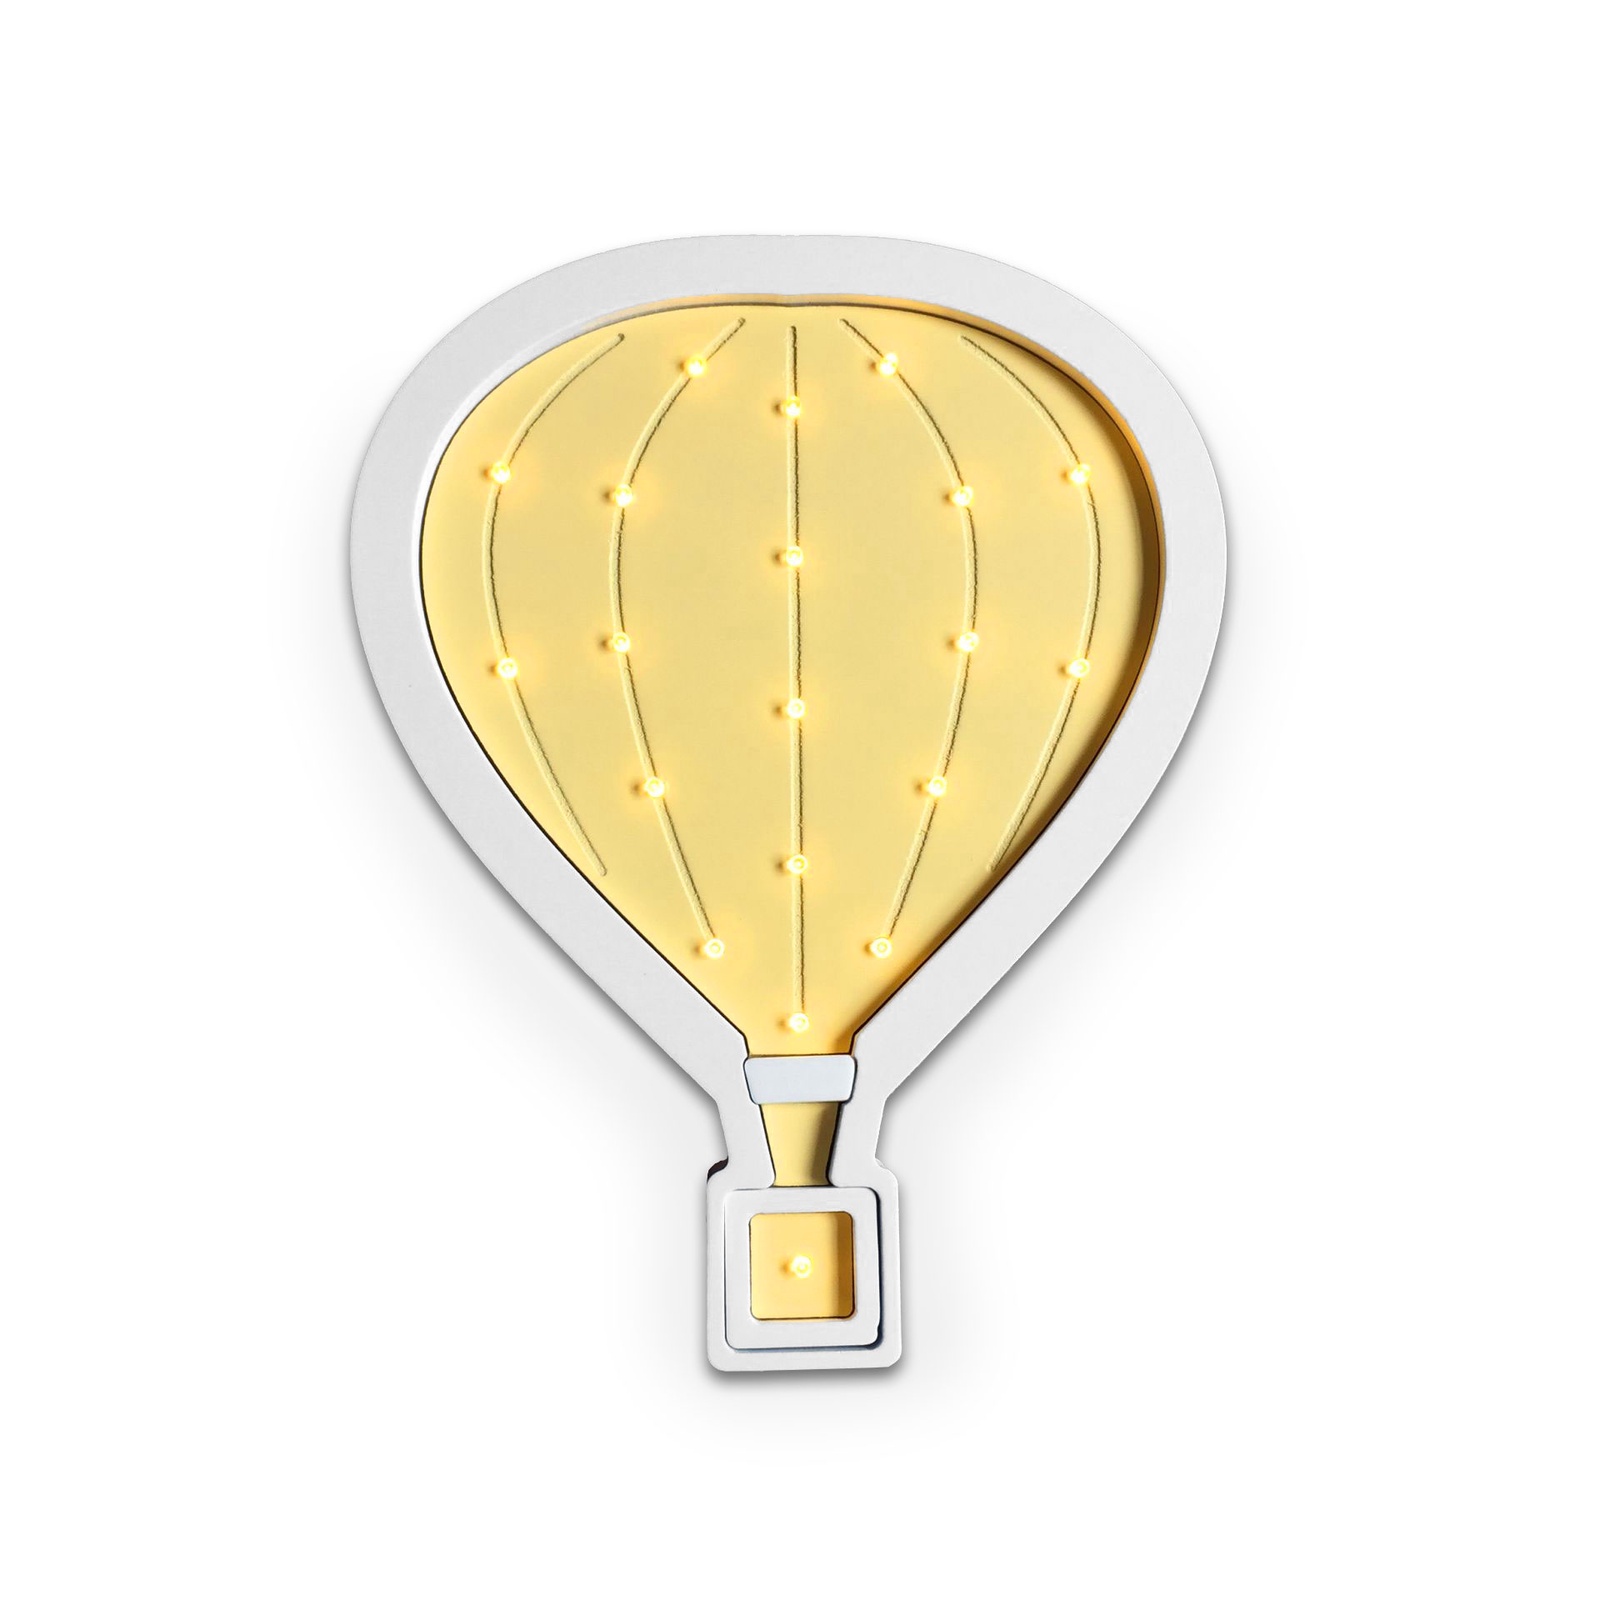 Ночник Amelia Kingdom Воздушный шар, желтый, белый